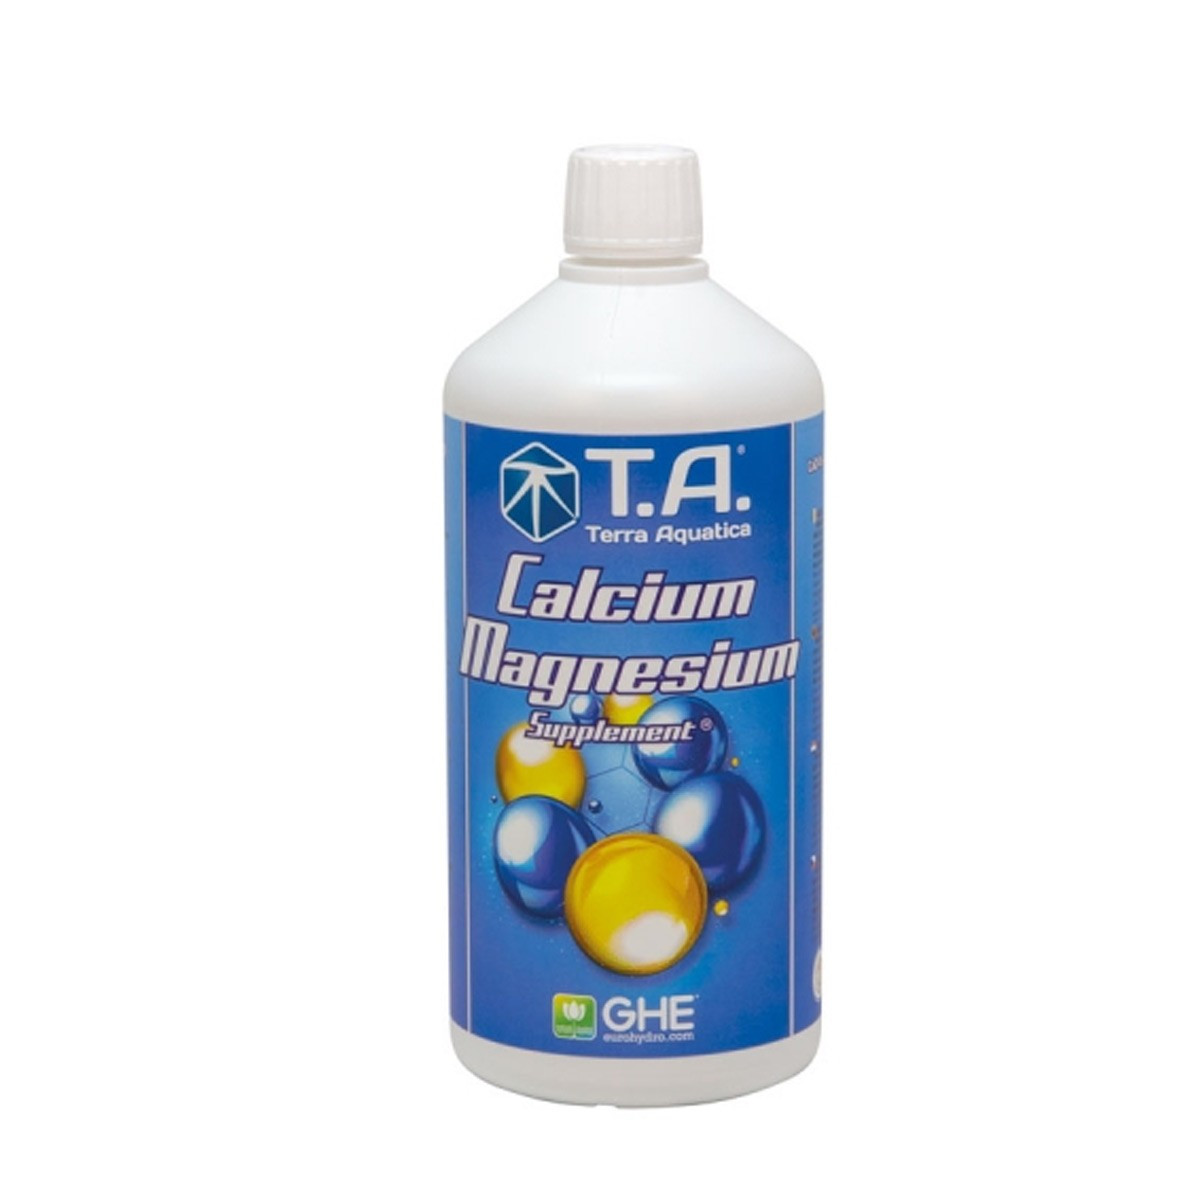 Magnésium et Calcium supplément - 1l - GHE - Terra Aquatica